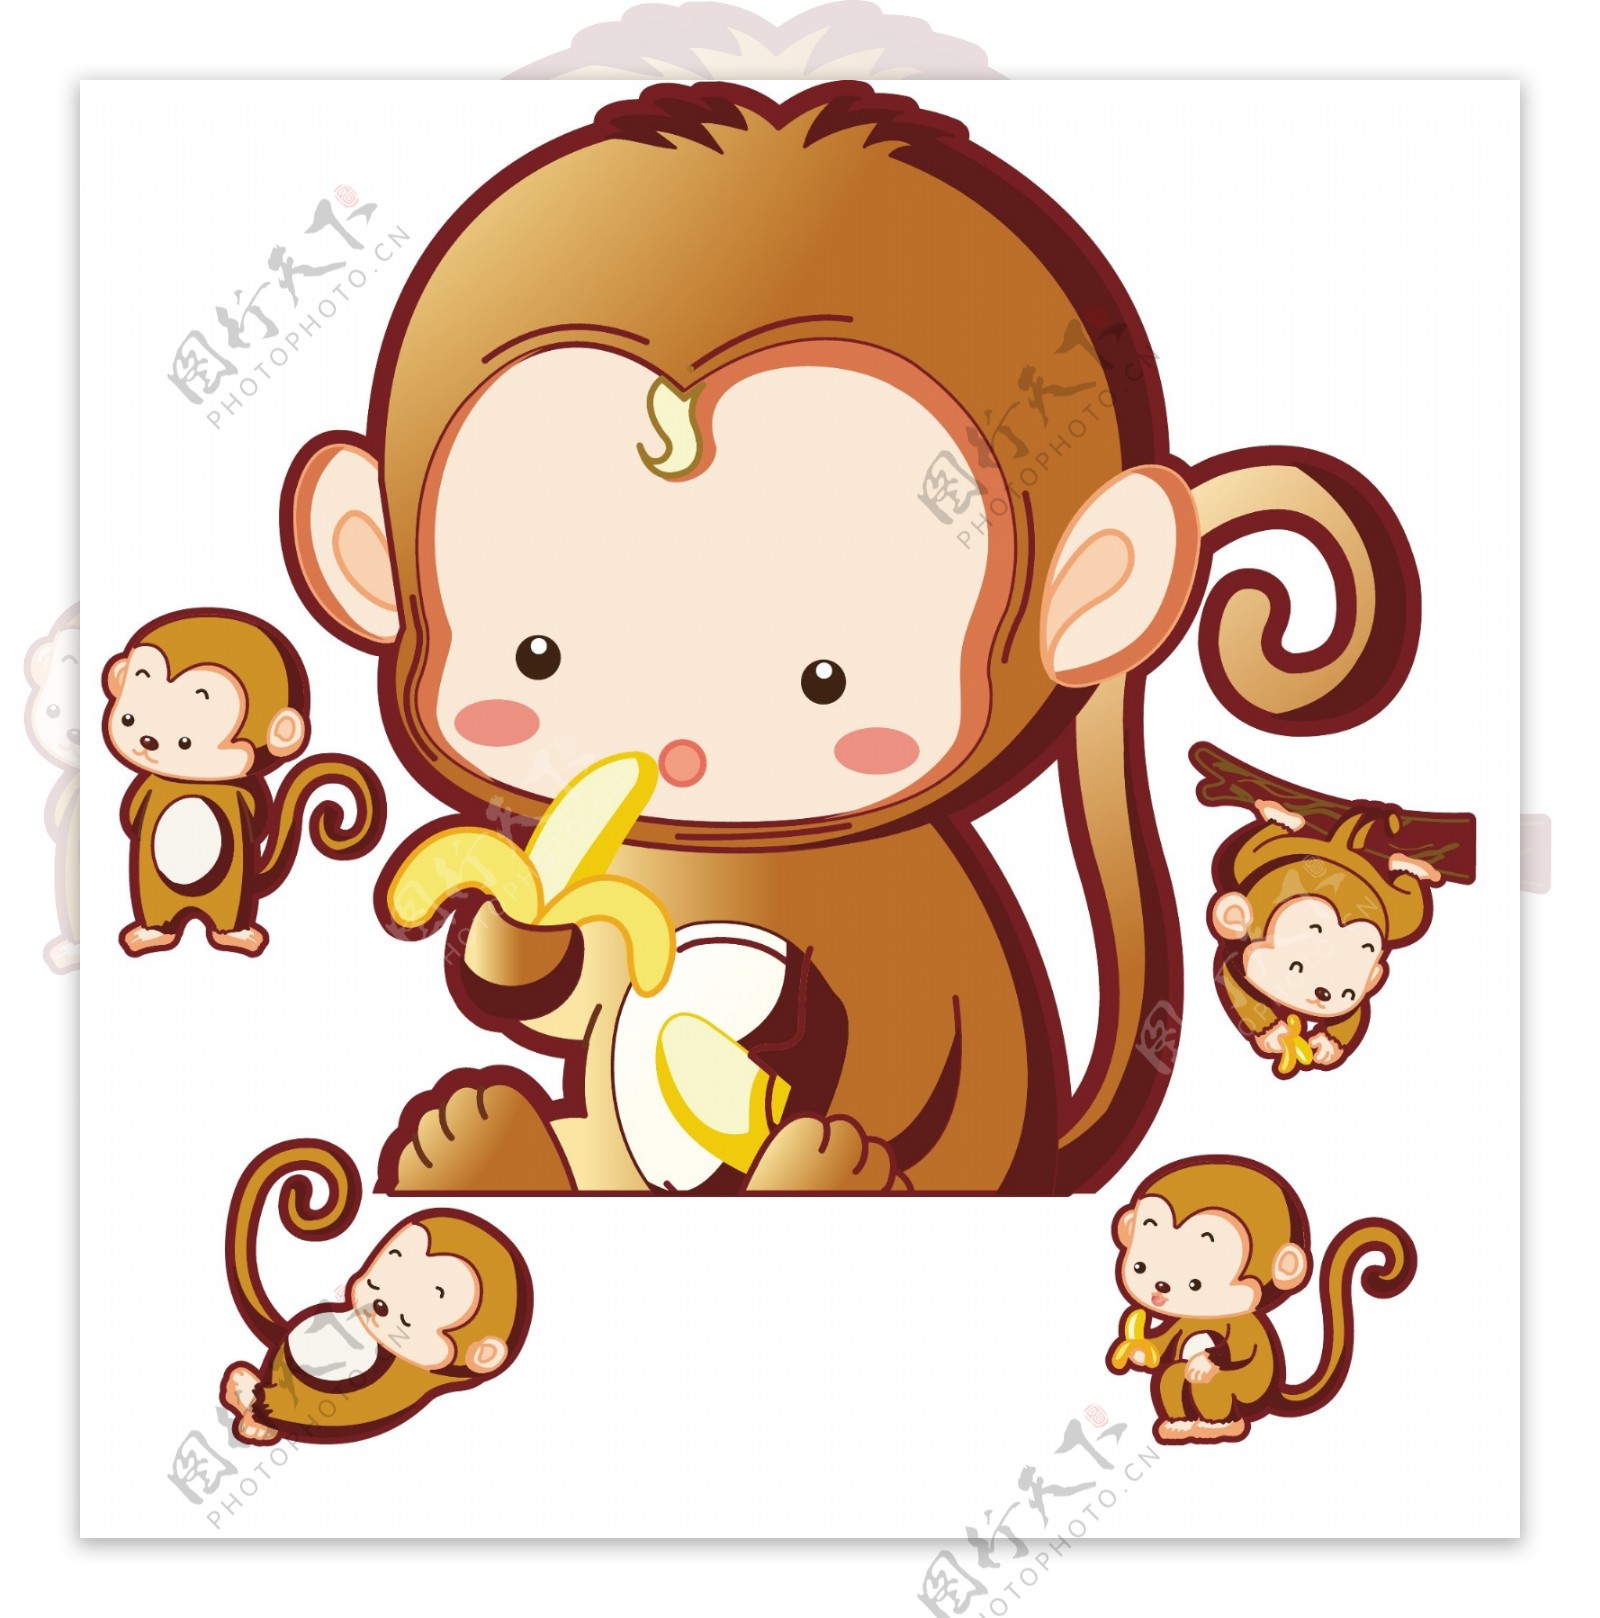 香蕉猴子插画